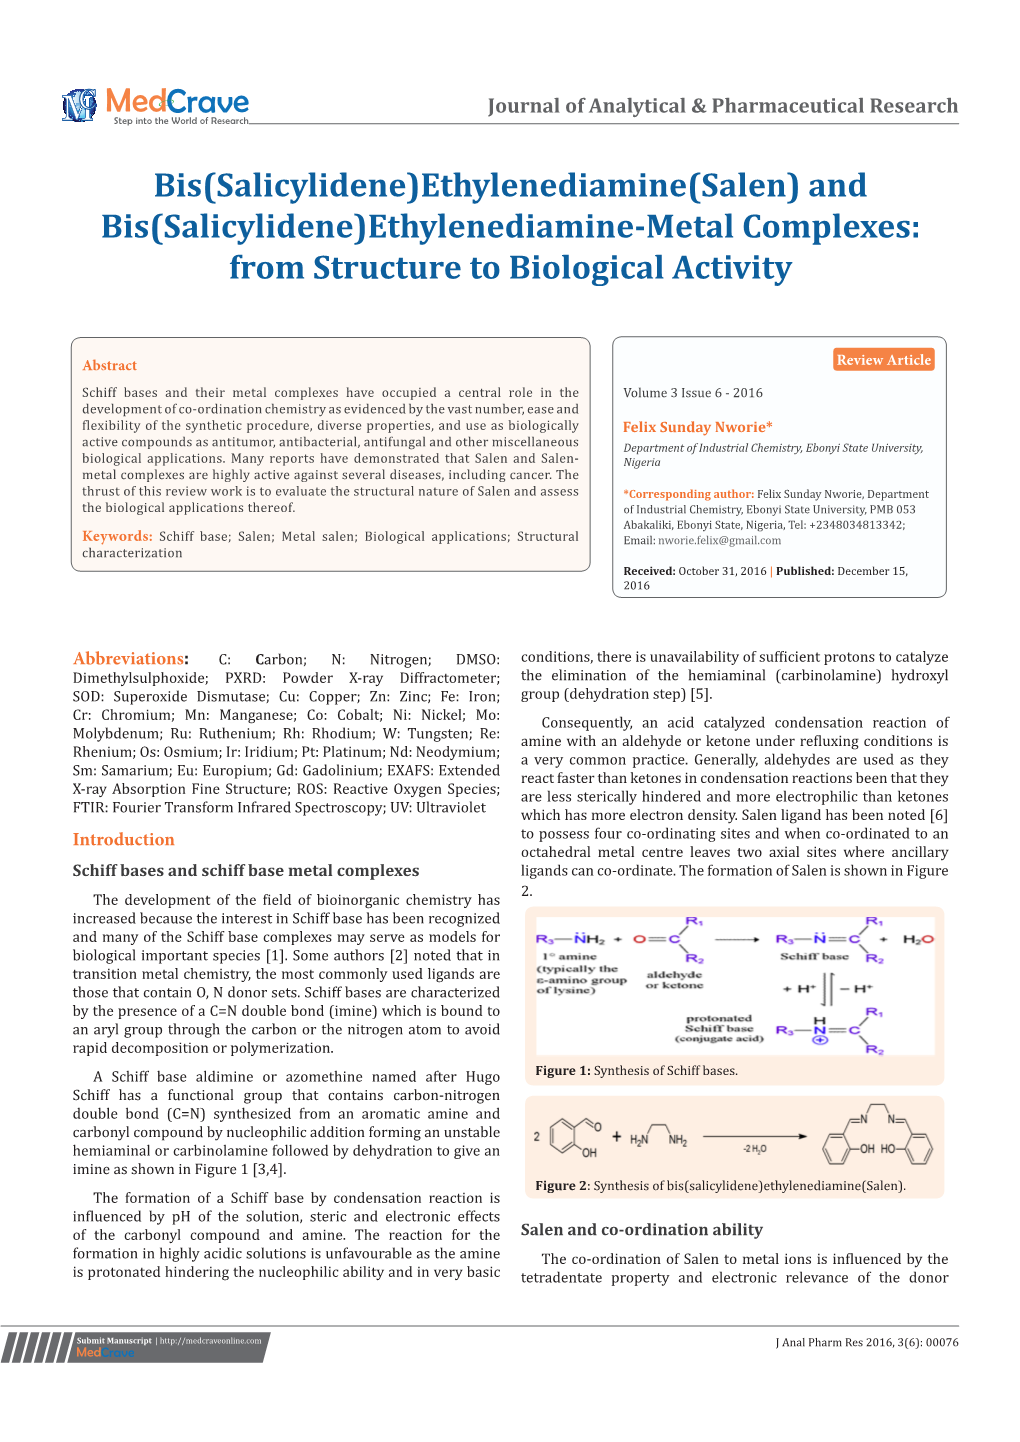 Bis(Salicylidene)Ethylenediamine(Salen) and Bis(Salicylidene)Ethylenediamine-Metal Complexes: from Structure to Biological Activity